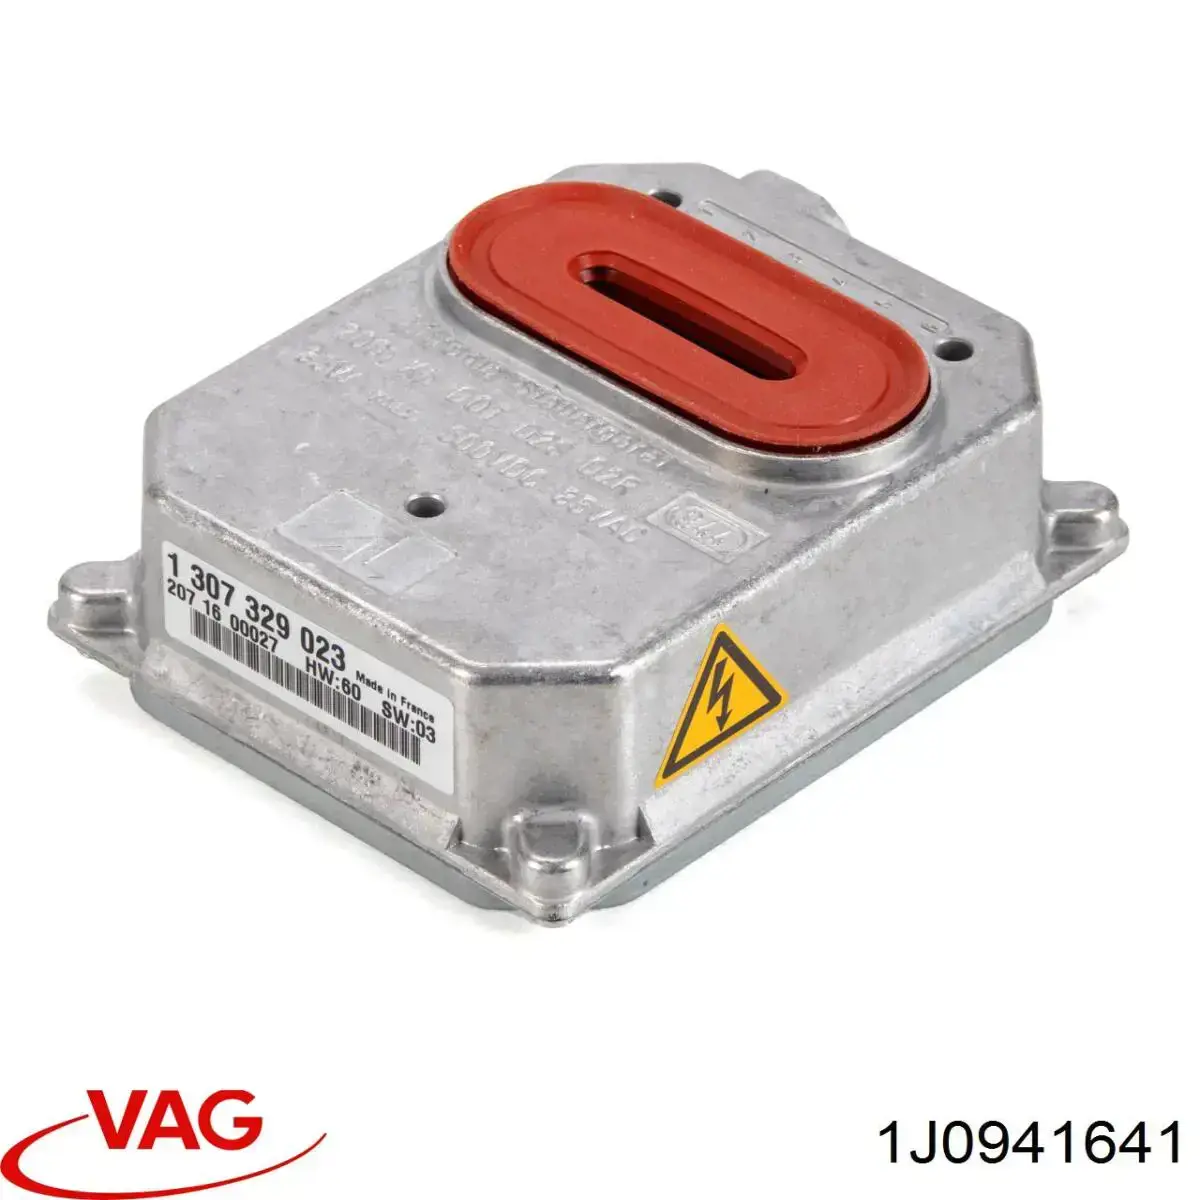 1J0941641 VAG bobina de reactancia, lámpara de descarga de gas